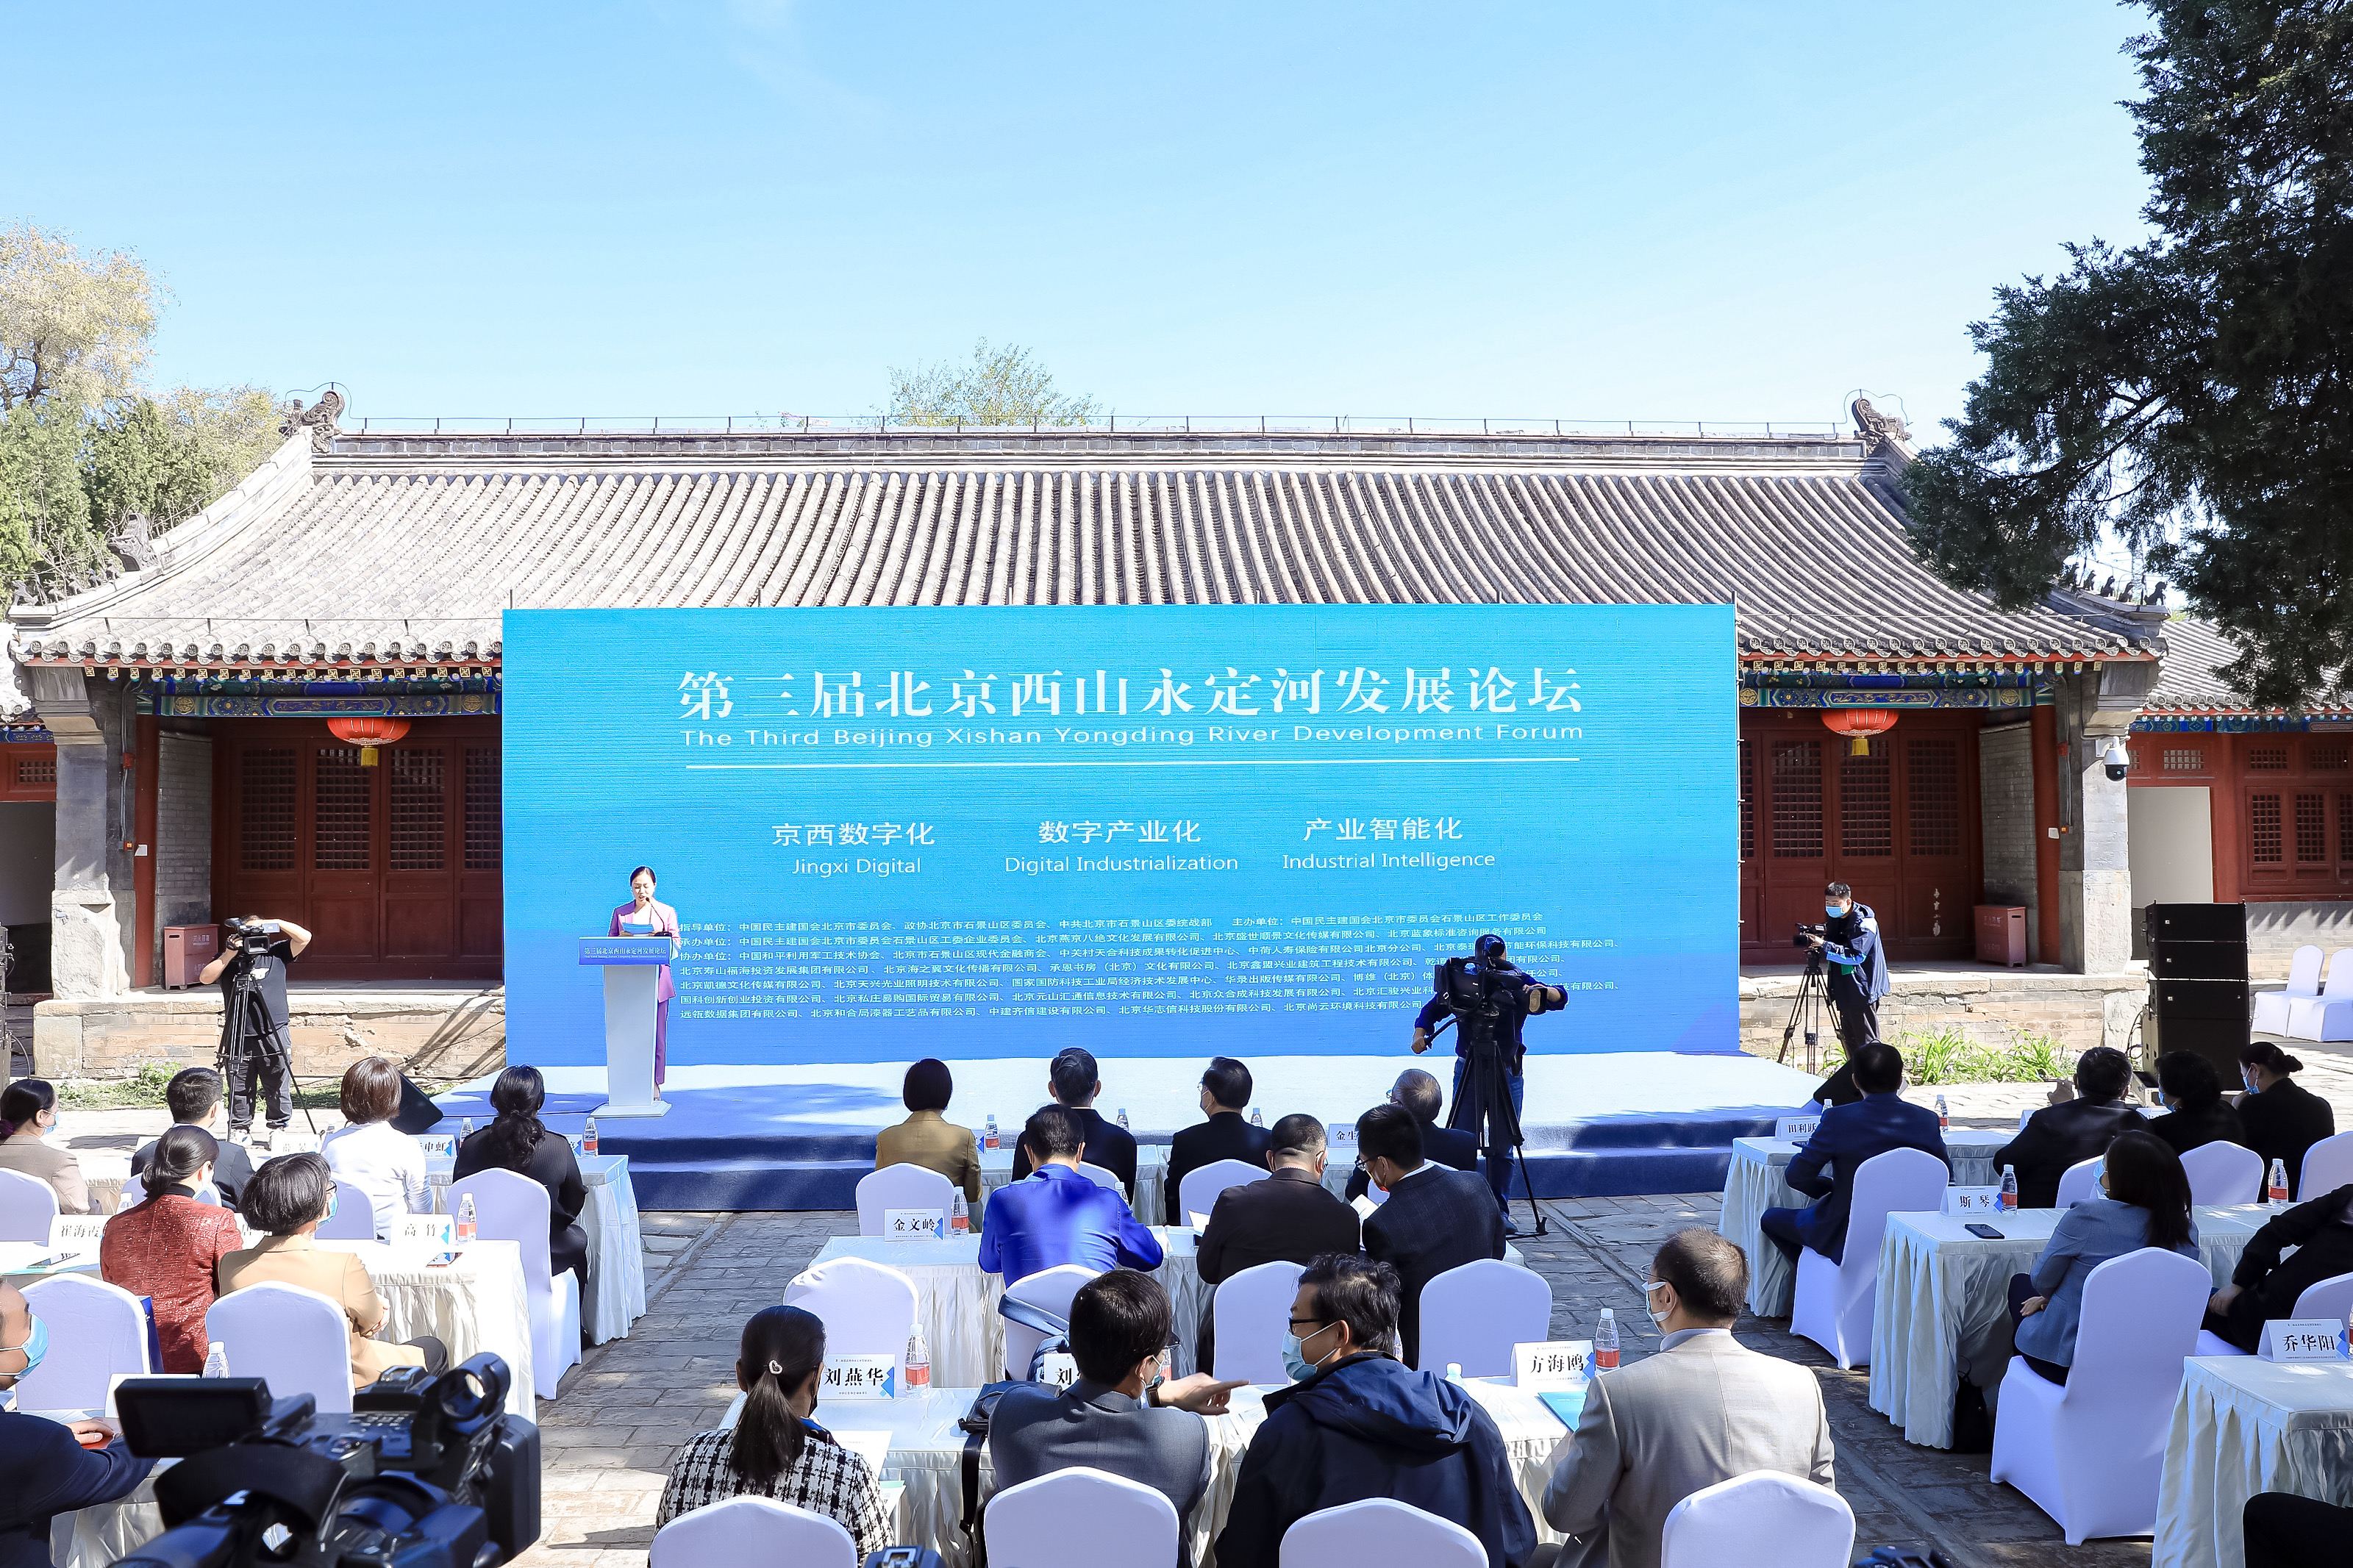 第三届北京西山永定河发展论坛在北京燕京八绝博物馆举办